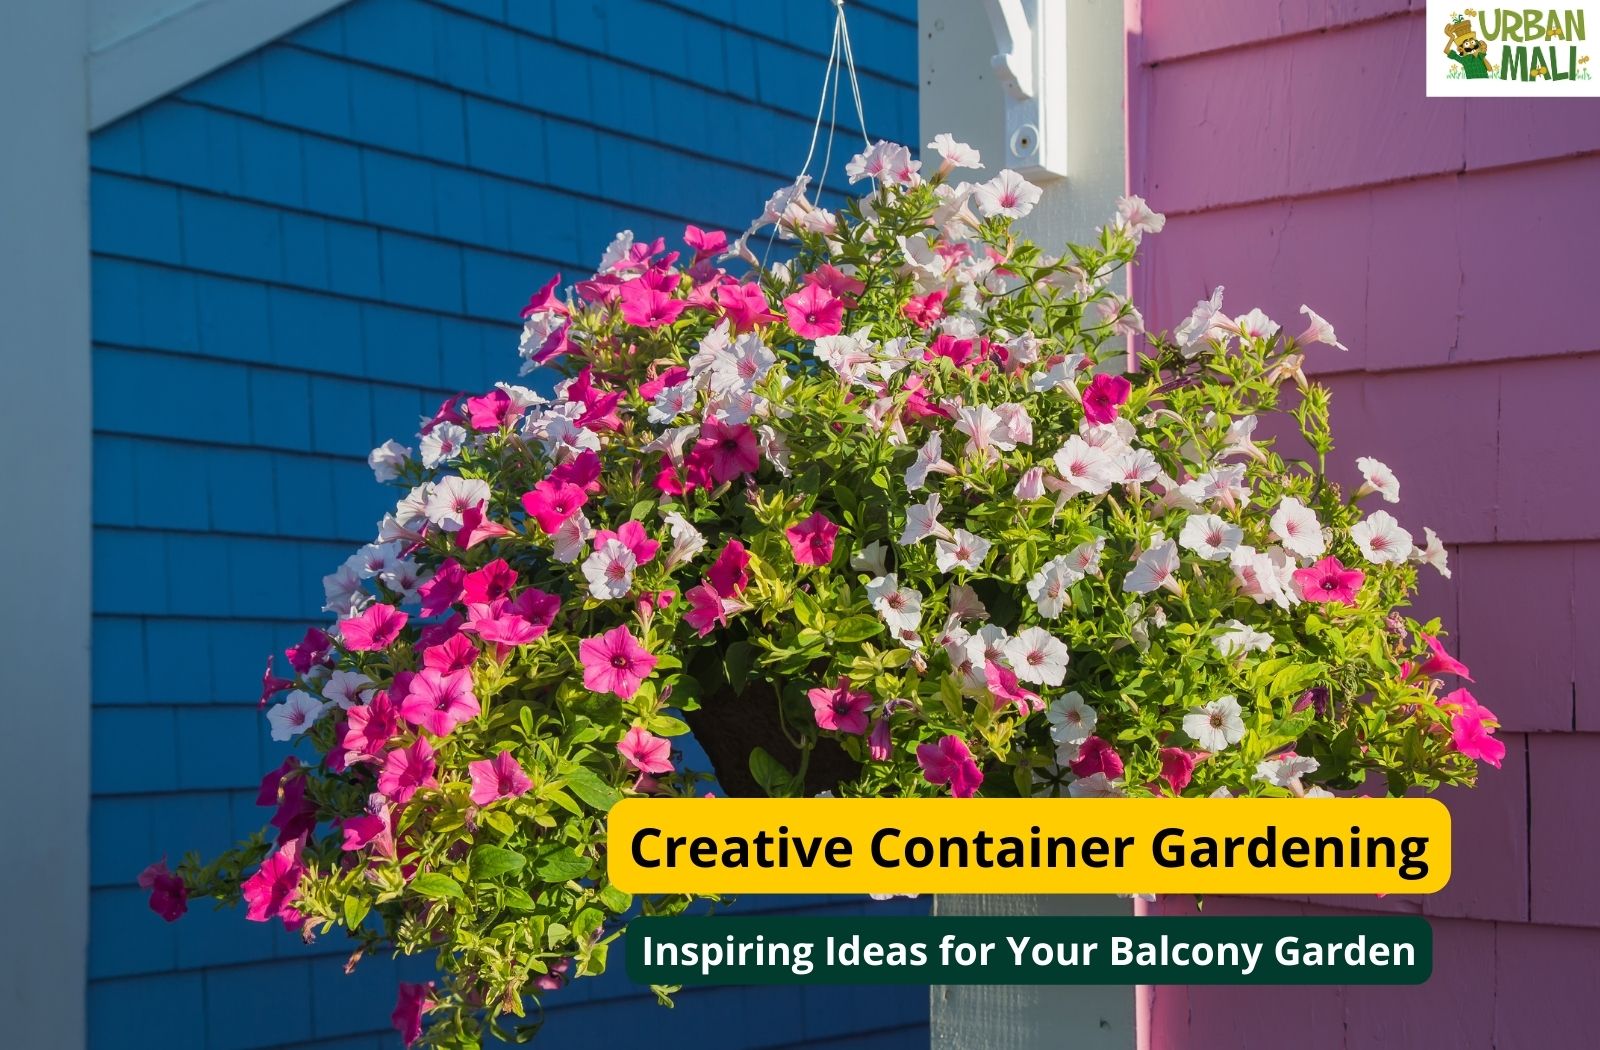 Creative Container Gardening: Inspiring Ideas for Your Balcony Garden